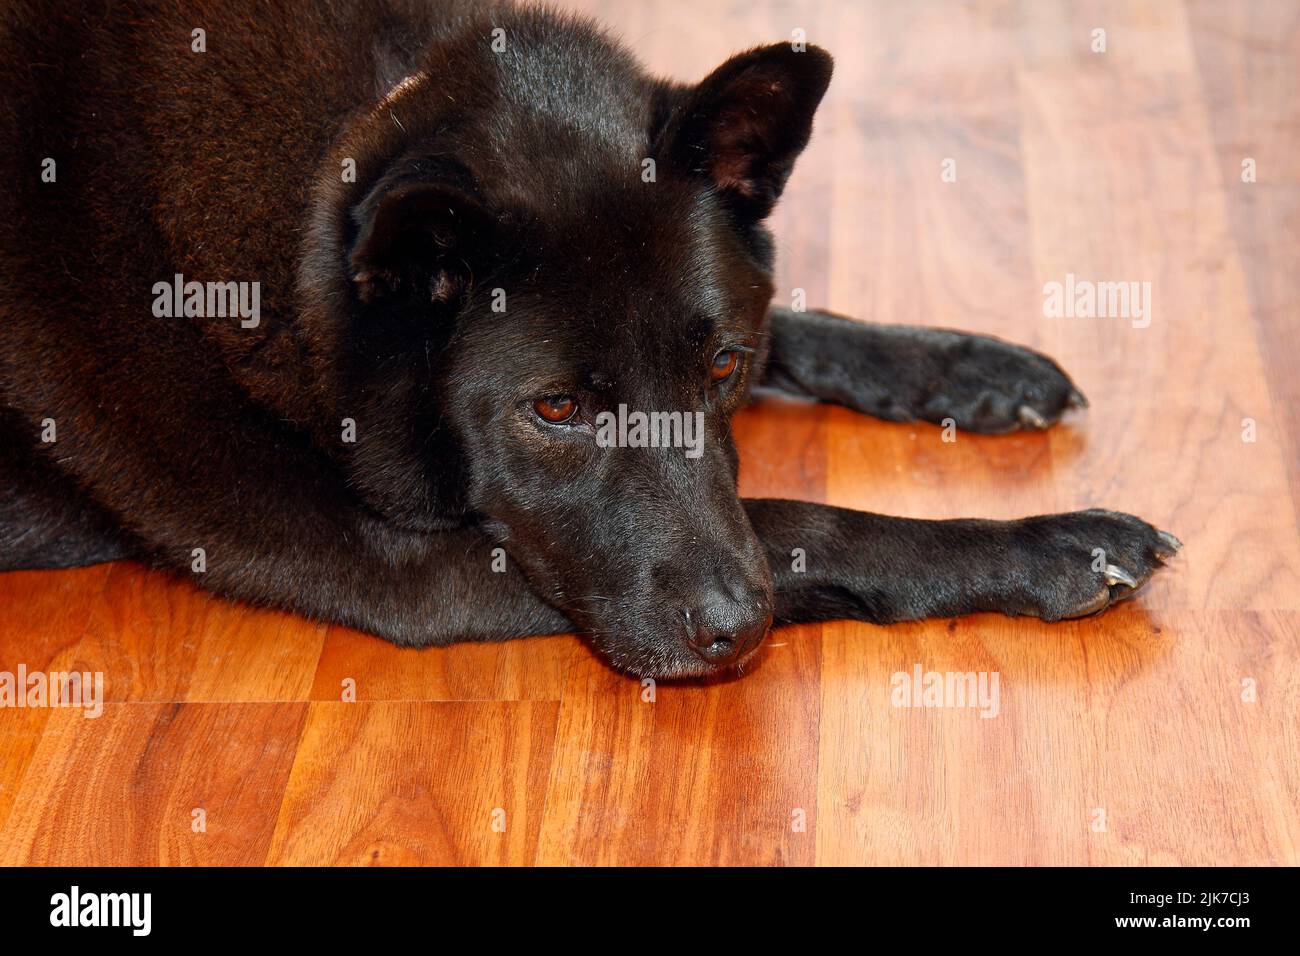 black dog, lying on wood floor, head on leg, canine, sad, pet, animal, PR Stock Photo